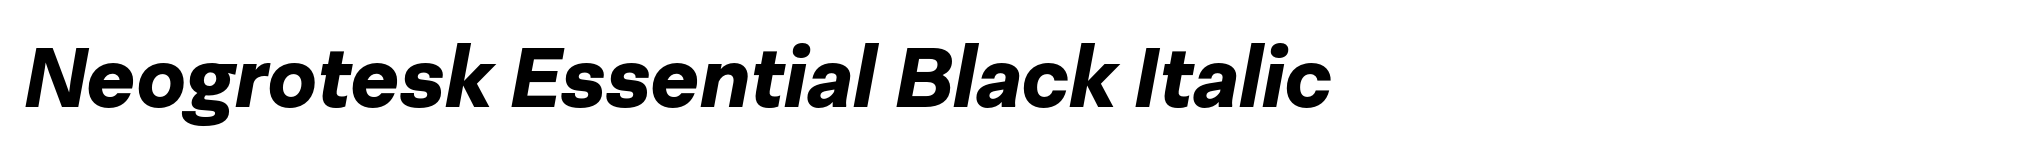 Neogrotesk Essential Black Italic image